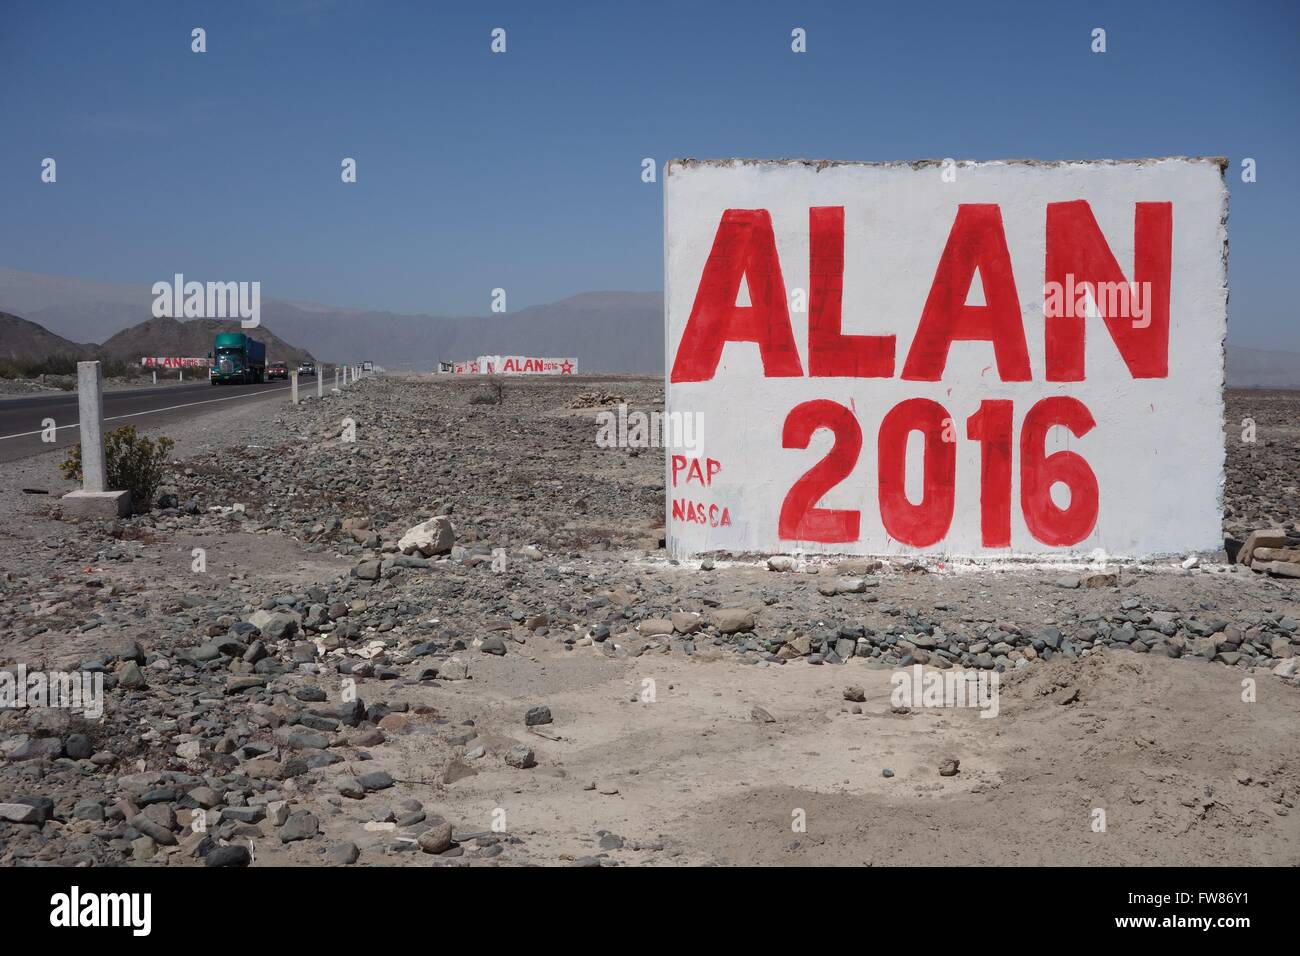 Plakate für politische Werbung sind in Peru bekannt. Aber Wände werden verwendet für die Darstellung der Namen der Kandidaten. -Alan (García) regierte bereits zweimal Peru: 1985-1990 und 2006-2011. Jetzt läuft er bei den Wahlen im April 2016. (2015-08-14) Stockfoto